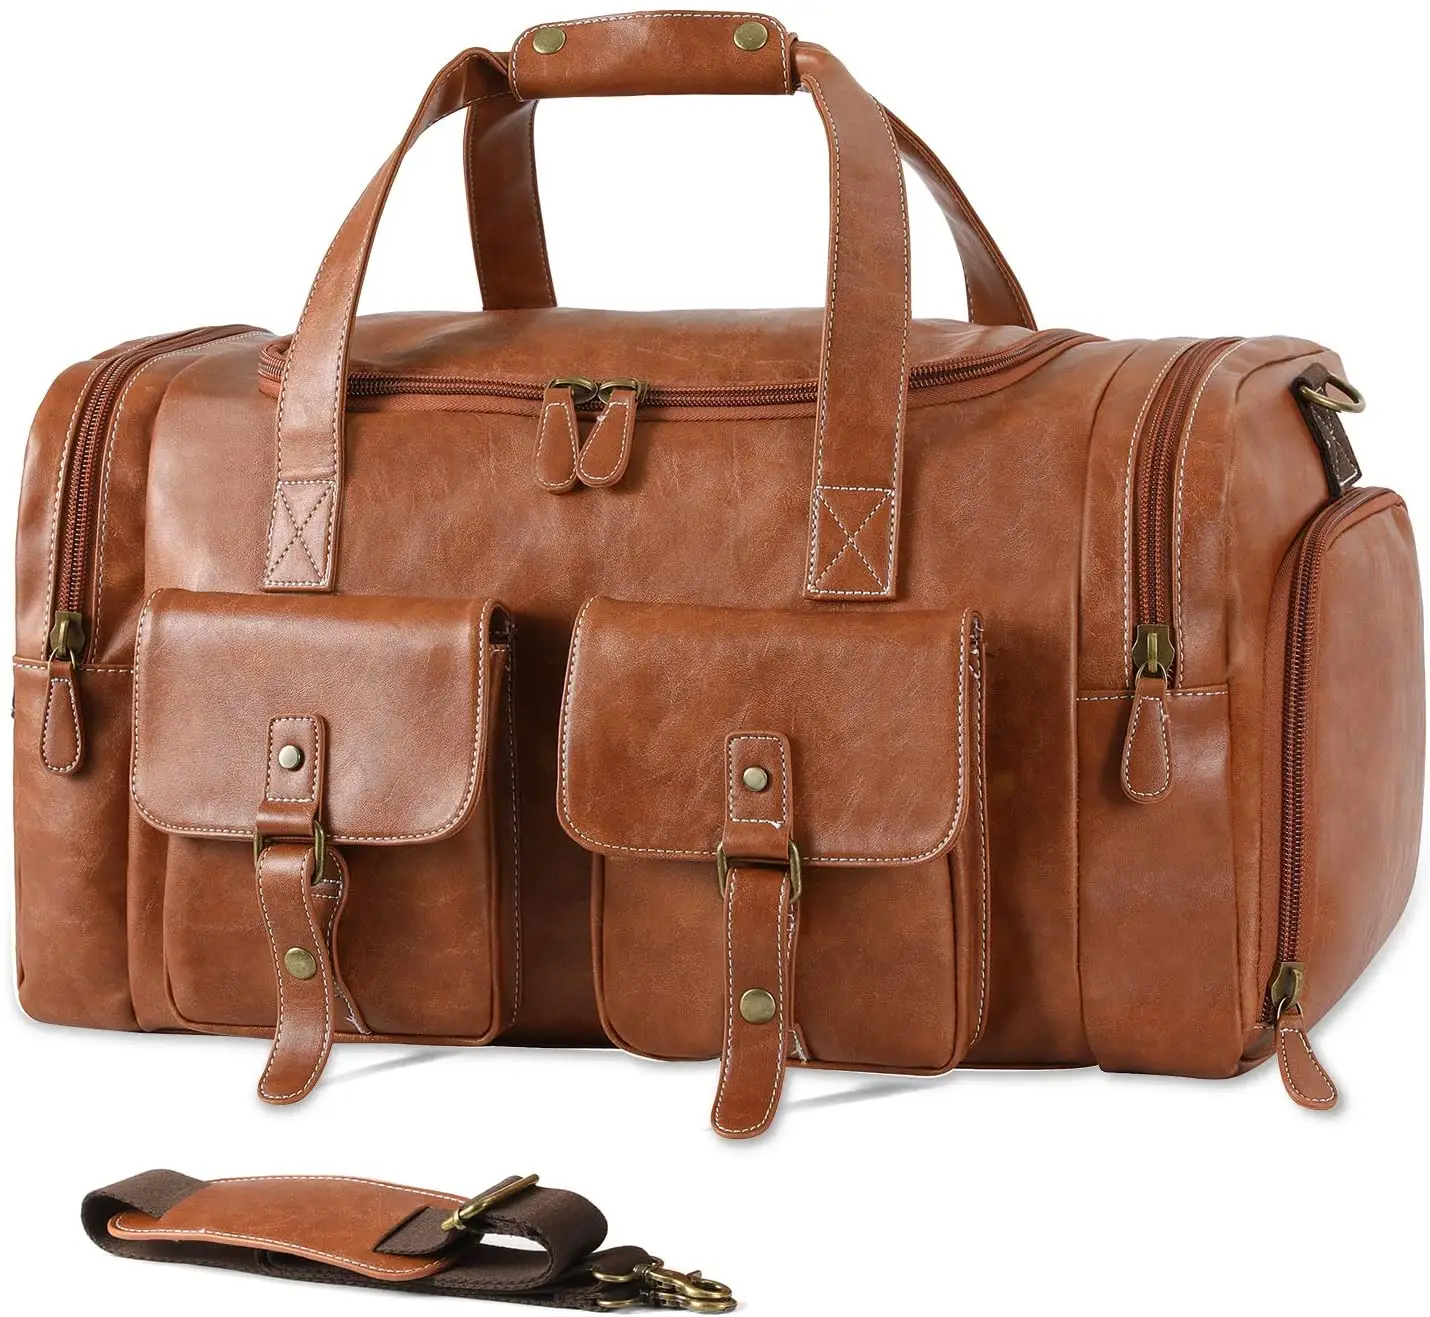 कस्टम यात्रा Duffel बैग जूता पाउच बैग पु चमड़े Weekender बैग पर ले जाने के साथ